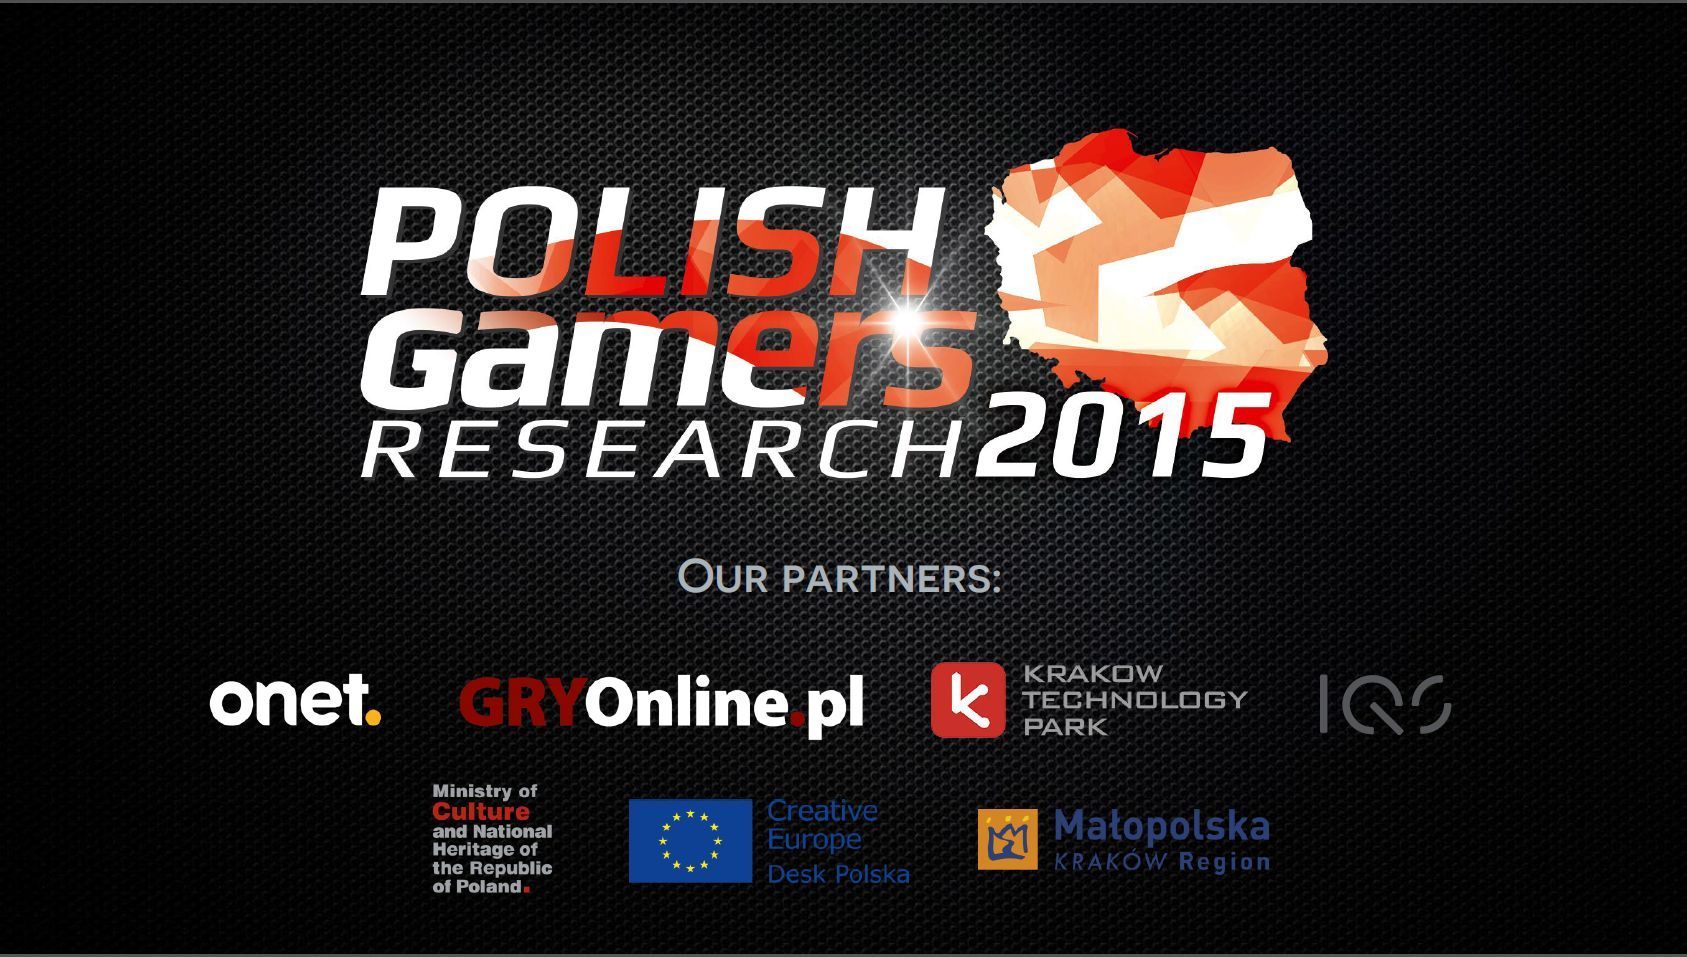 Gry w Polsce to stale rosnący rynek - Dlaczego i jak często gramy? Zwyczaje polskich graczy według badań na Digital Dragons 2015 - wiadomość - 2015-05-24